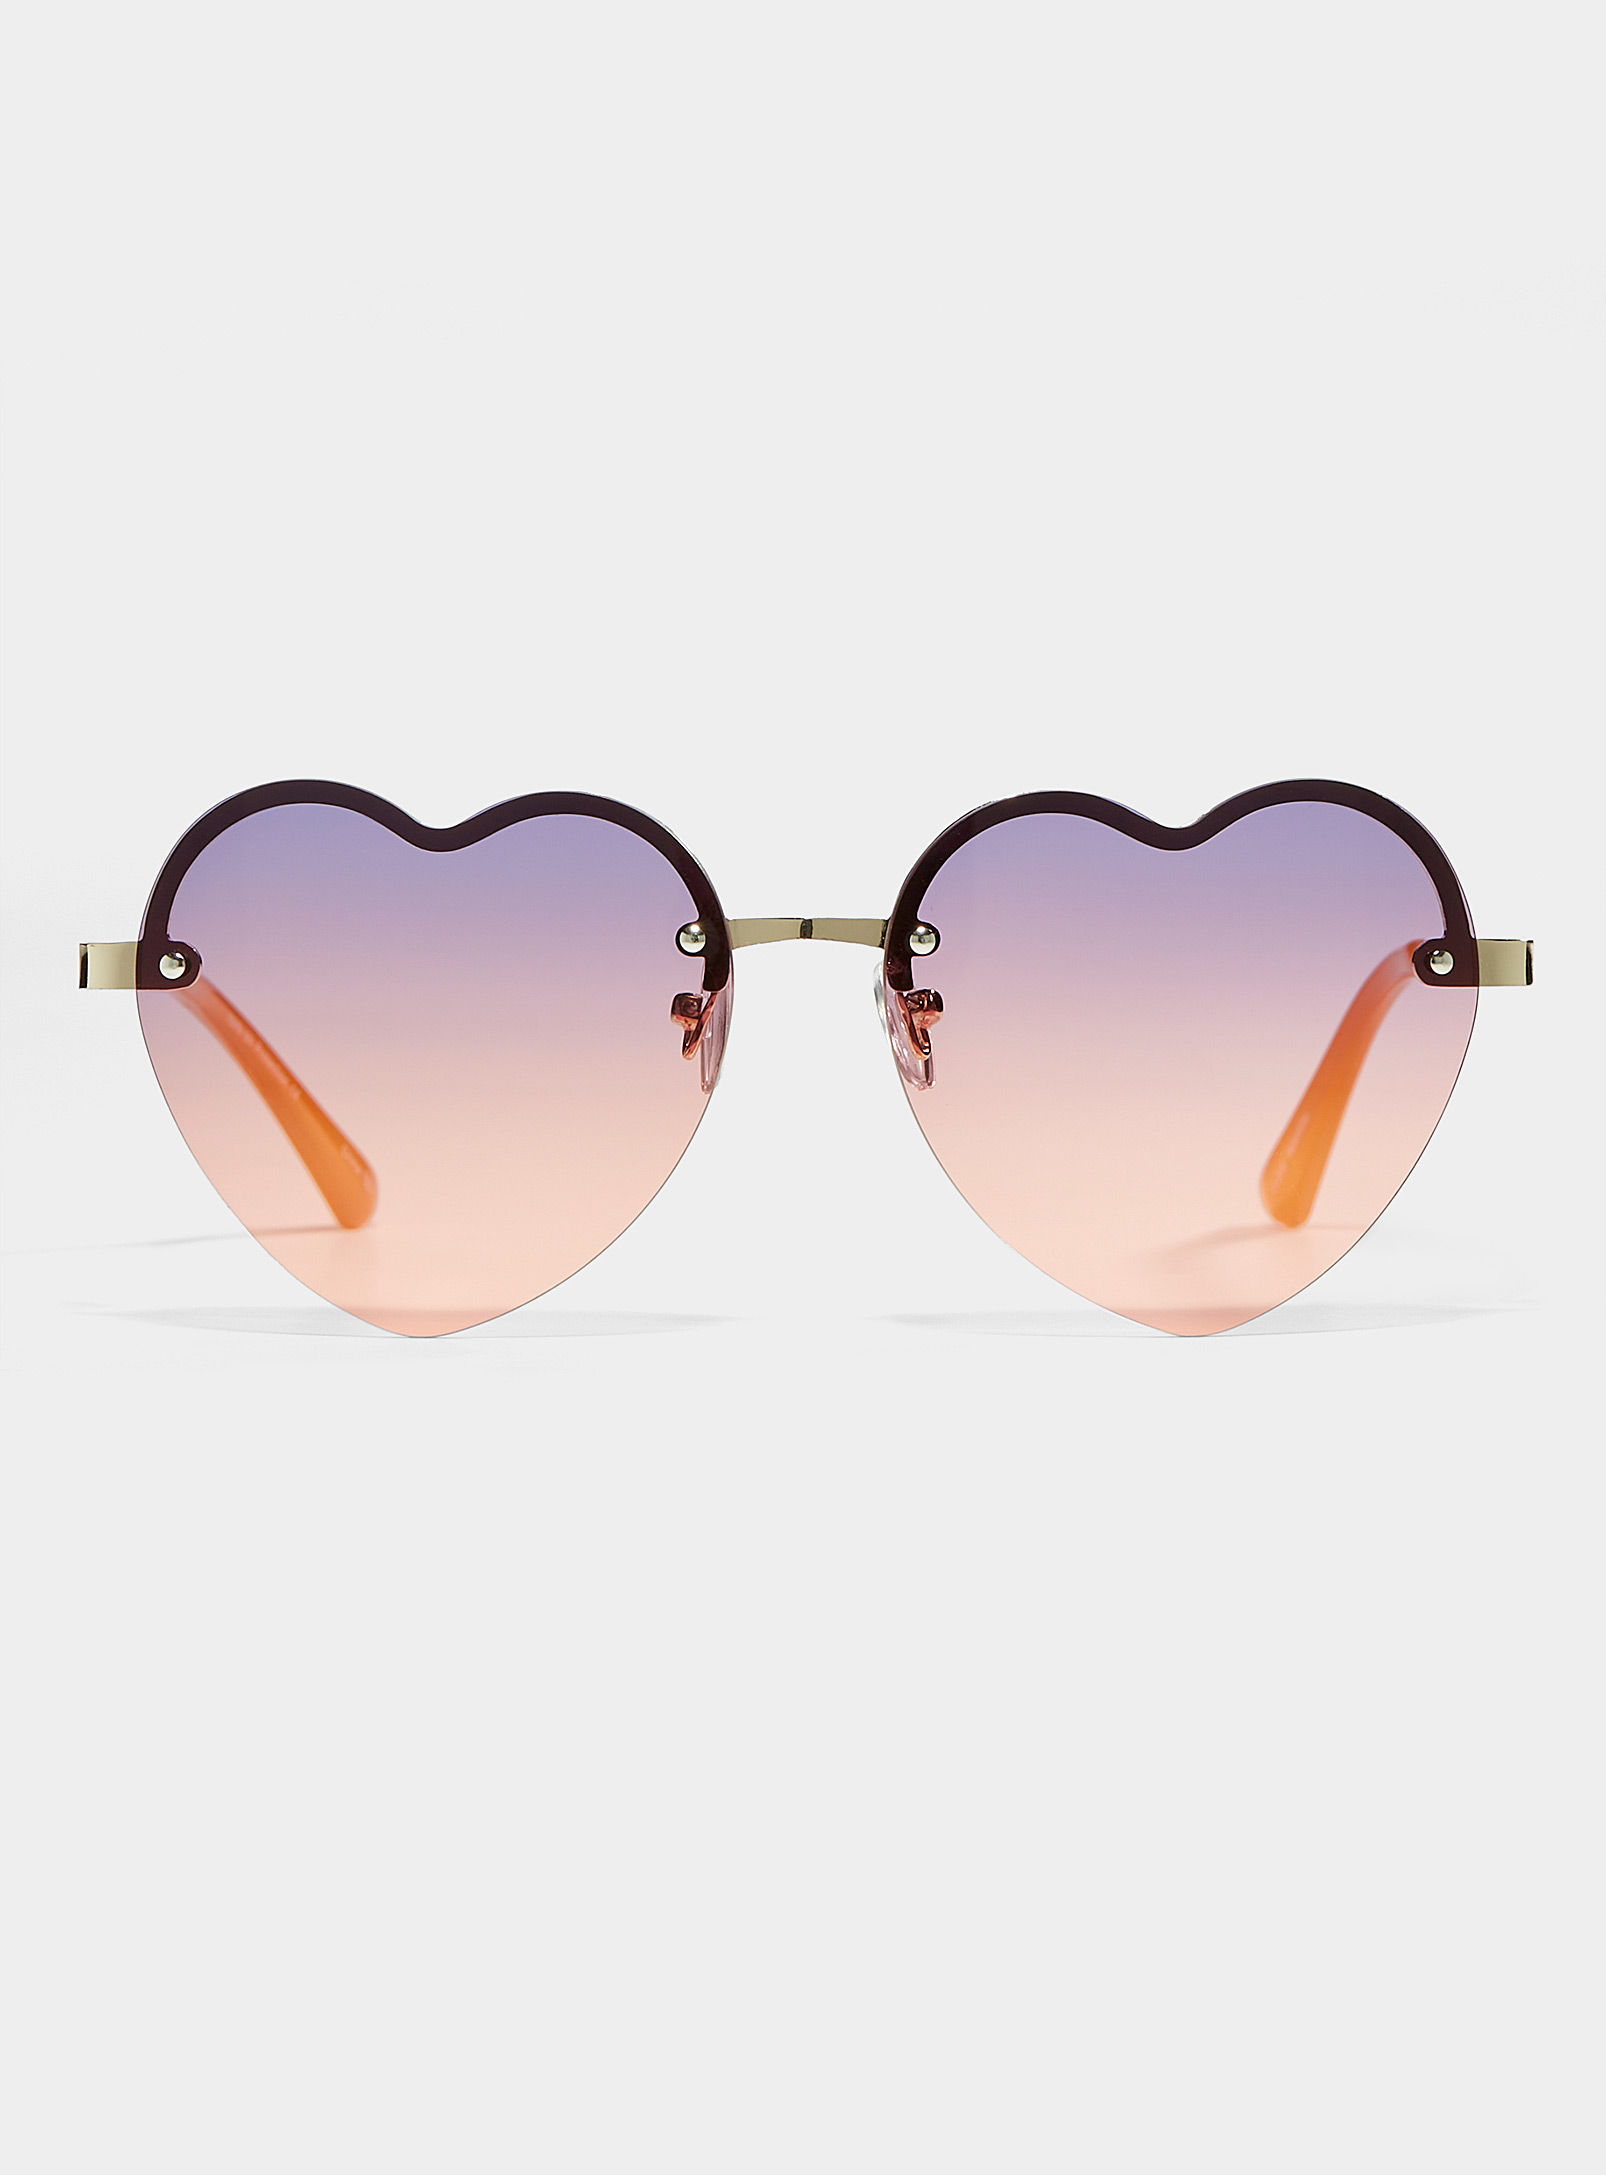 Simons - Les lunettes de soleil coeur Valentina